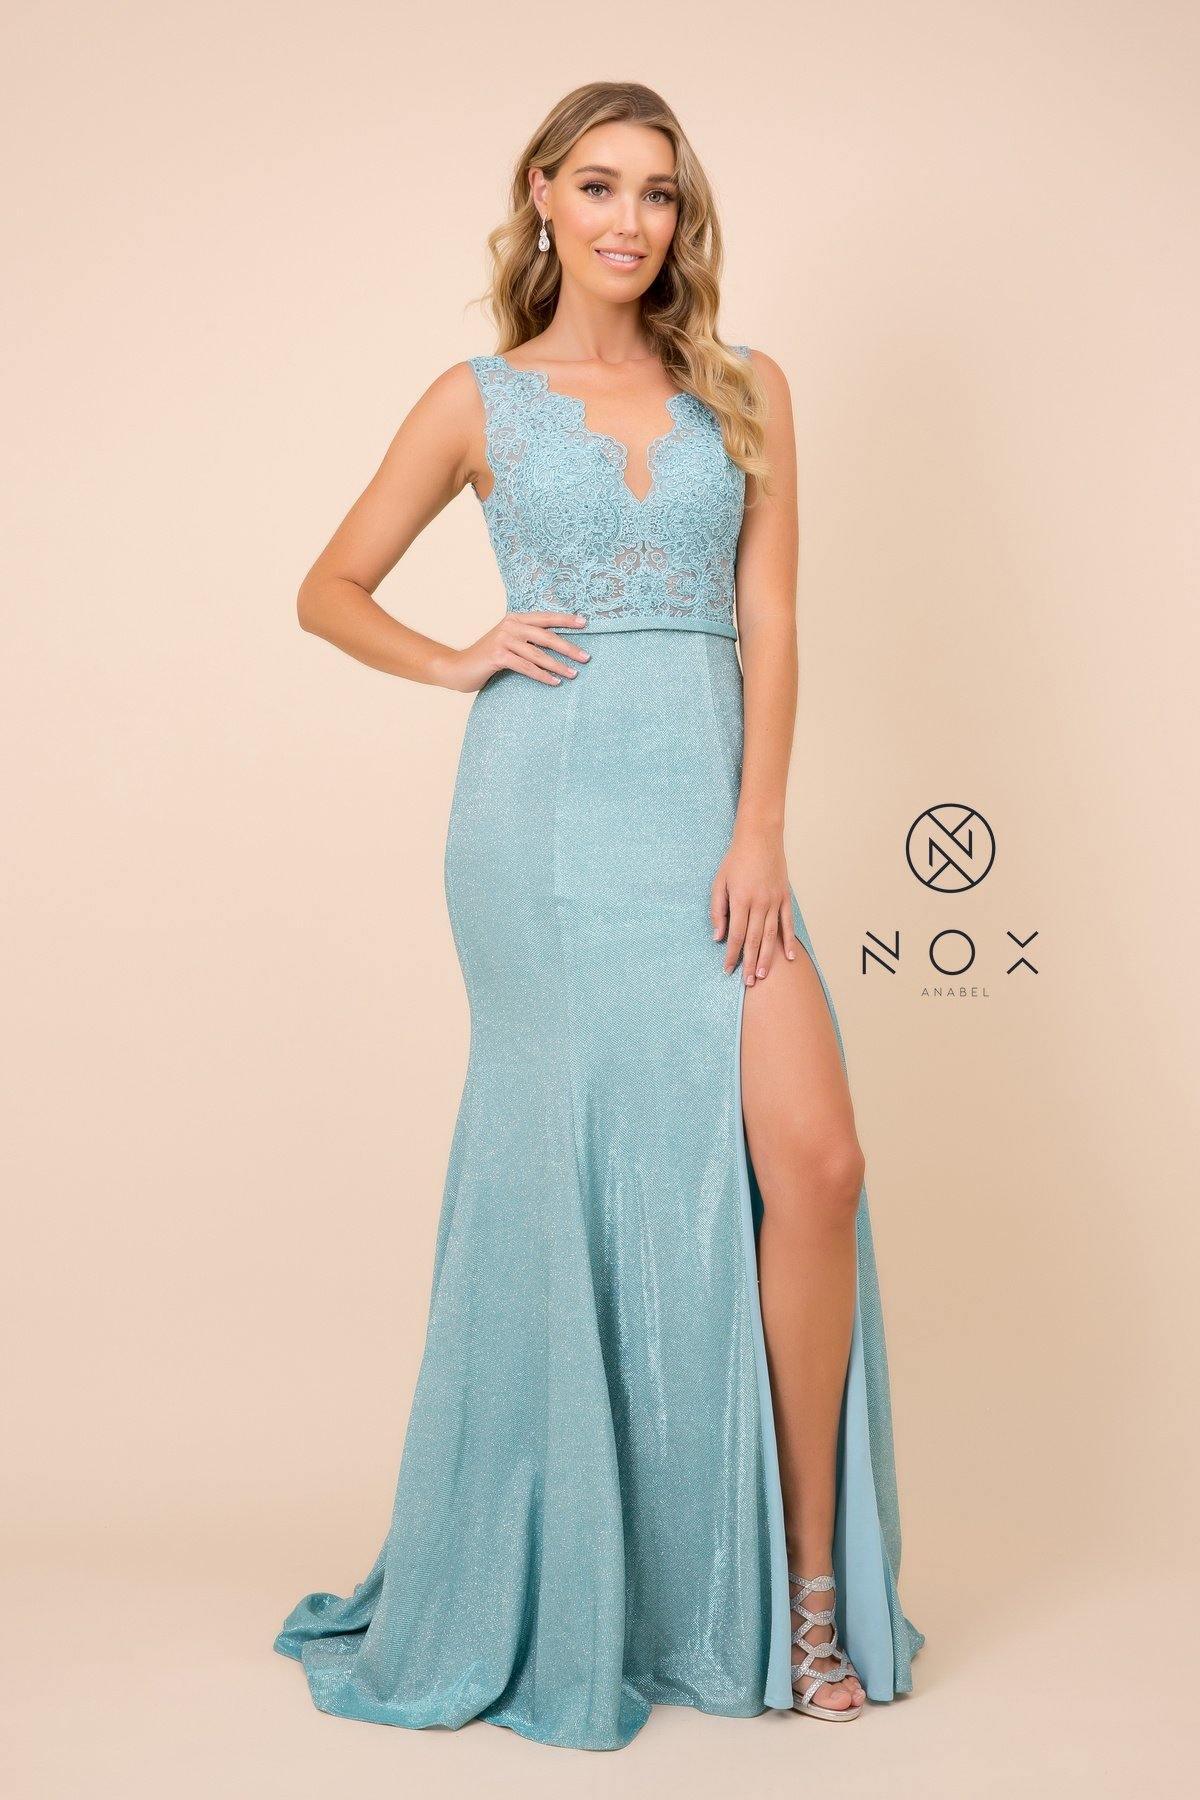 Long Formal Sleeveless Metallic Skirt Prom Dress Turquoise